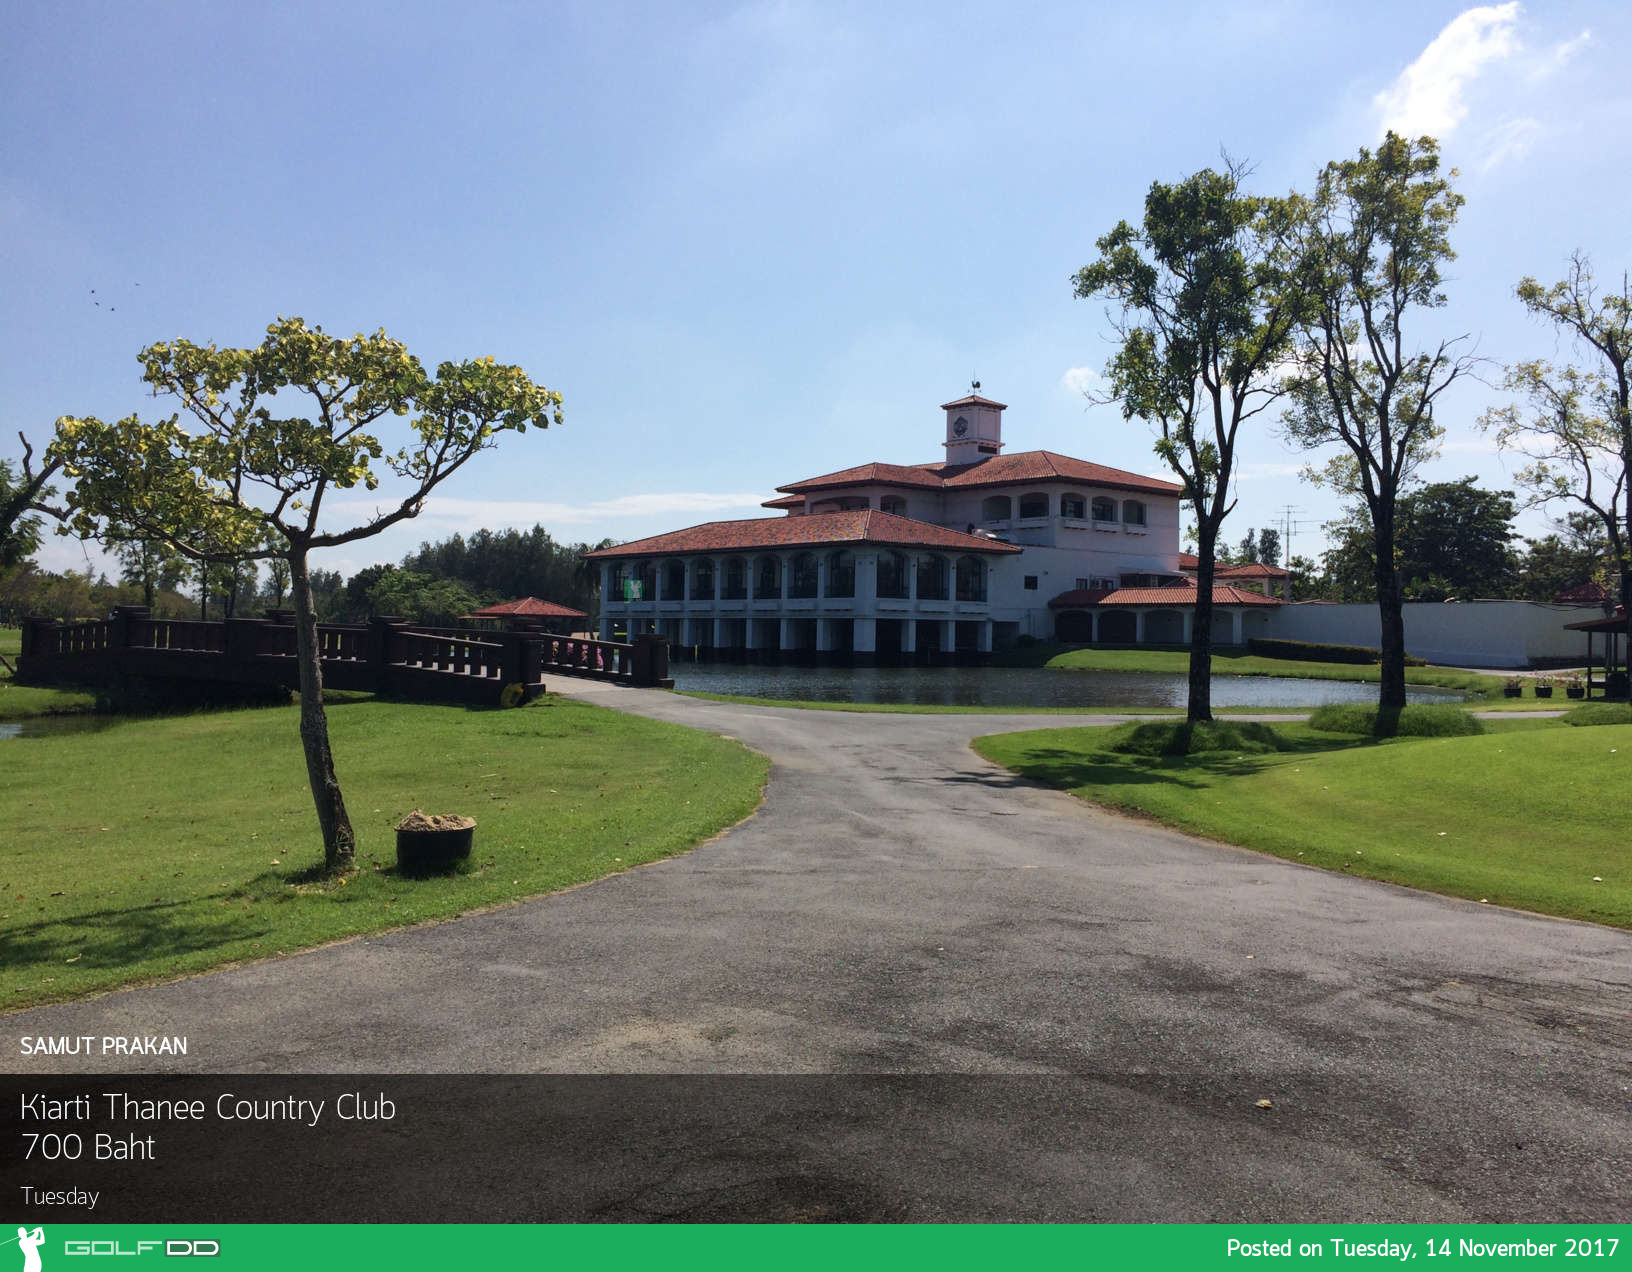 Kiarti Thanee Country Club - โปรโมชั่นสำหรับ Lady Golfers จากสนามกอล์ฟกำลังจะถูกปิดตัวลง ต้องรีบไป 